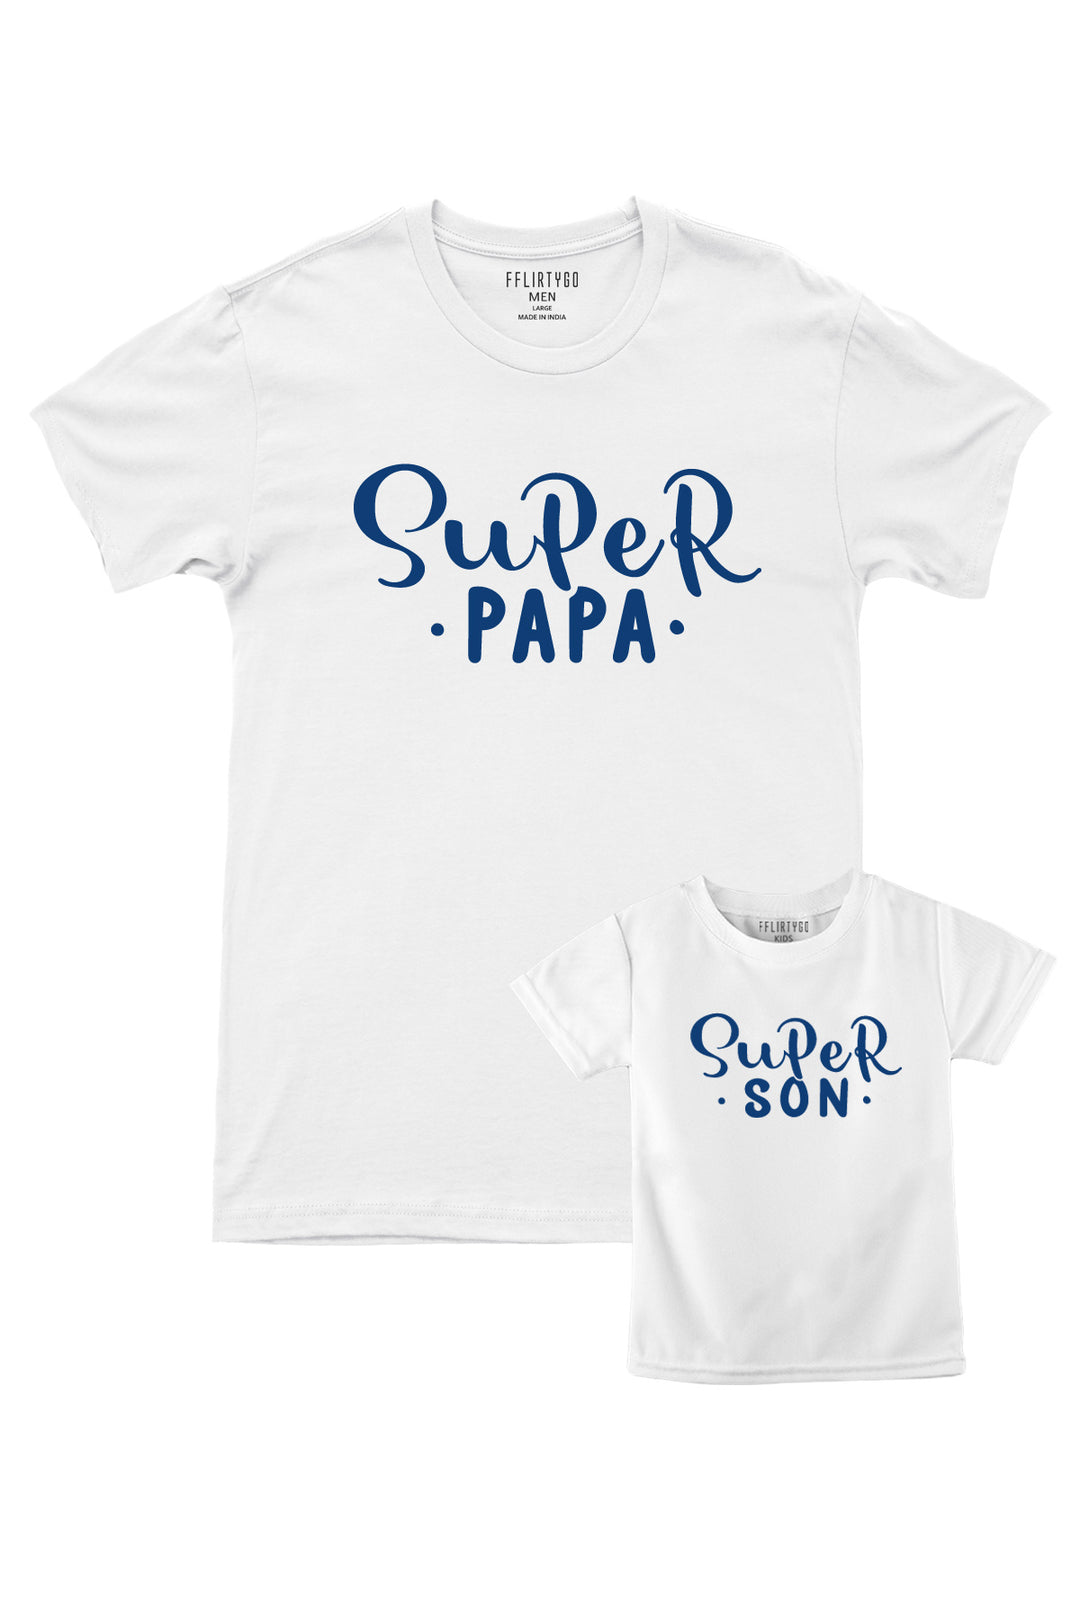 Super Papa - Super Son